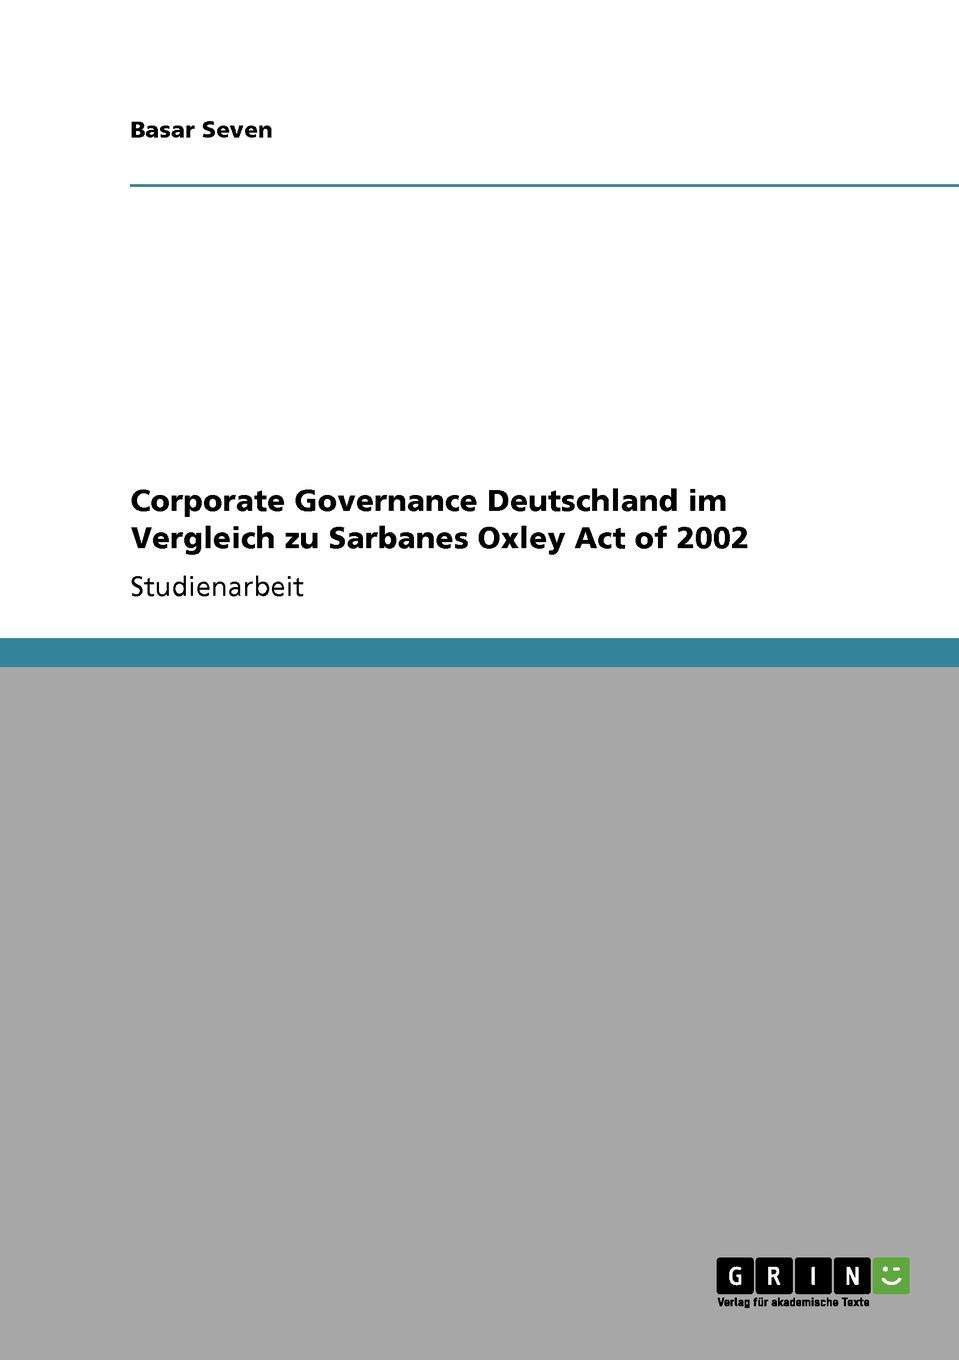 фото Corporate Governance Deutschland im Vergleich zu Sarbanes Oxley Act of 2002